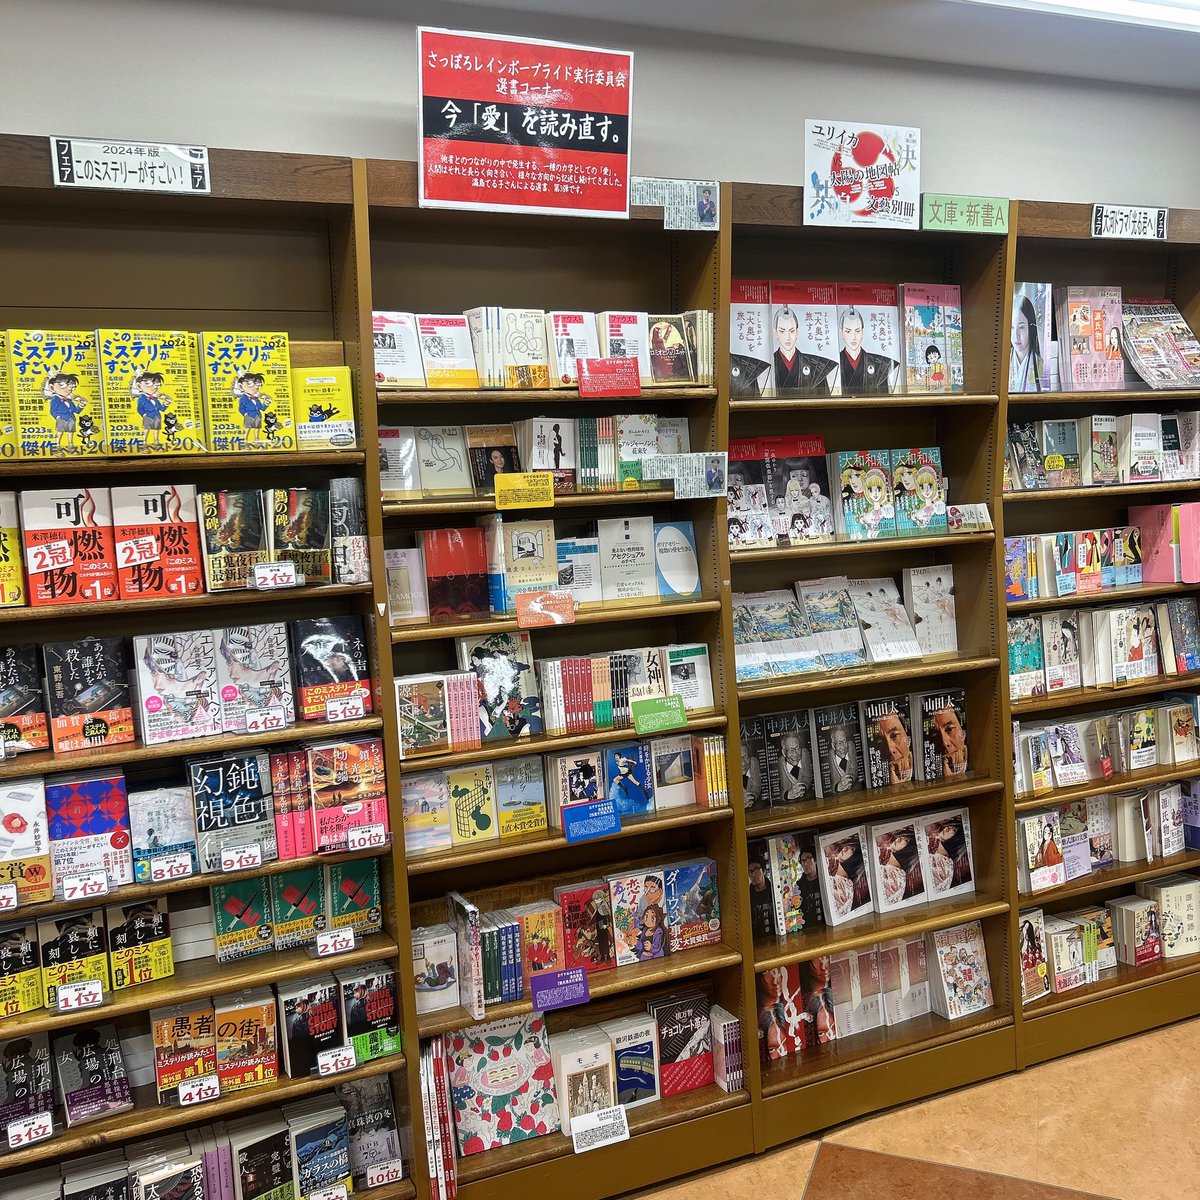 あまりの「えぐさ」に、原作の山田太一『異人たちとの夏』を購入。 目を通して「なるほど……！」と納得する箇所も多々。こちらは順番としては、映画鑑賞後に読むのがお勧め。 MARUZEN &ジュンク堂書店 札幌店の3階で手に入れられますよん！ 同じフロアの私の選書コーナーも見てってねん。よろしゅ！